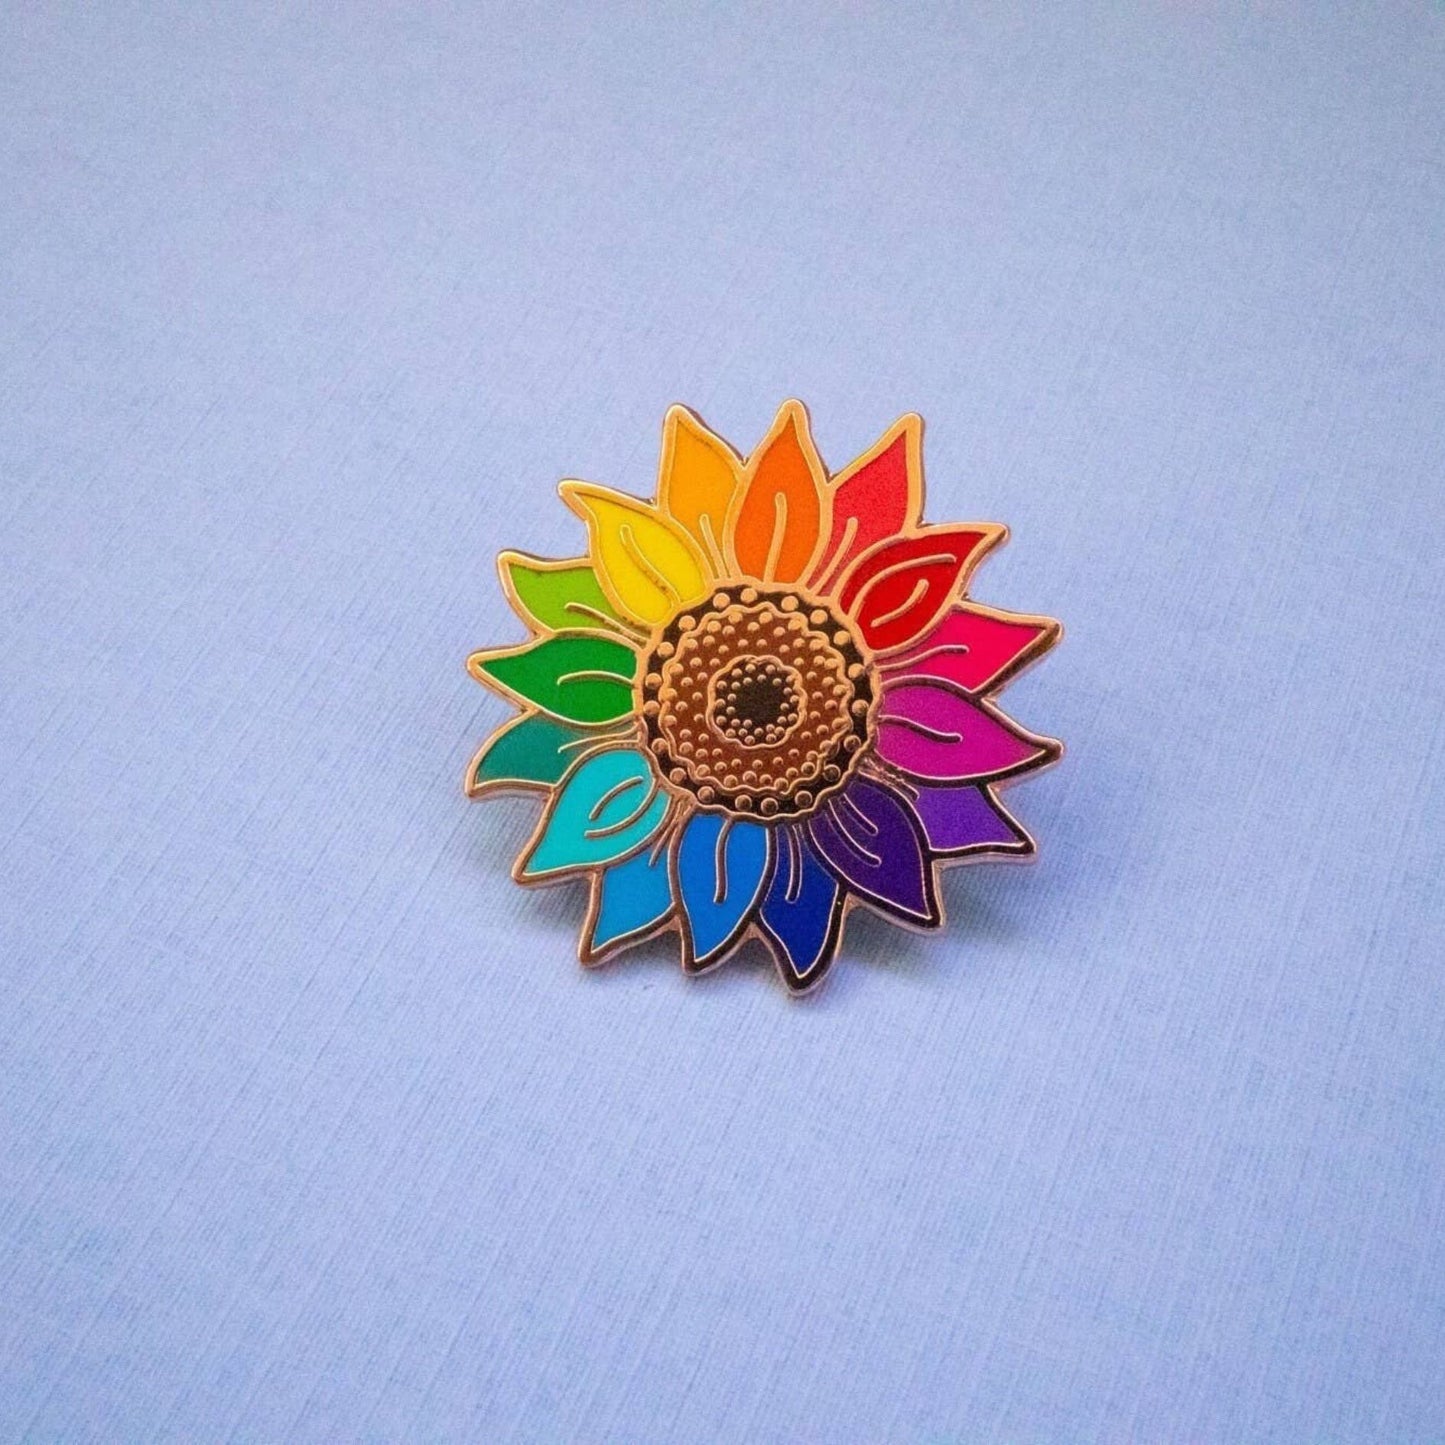 Anstecknadel mit Sonnenblume in Regenbogenfarben